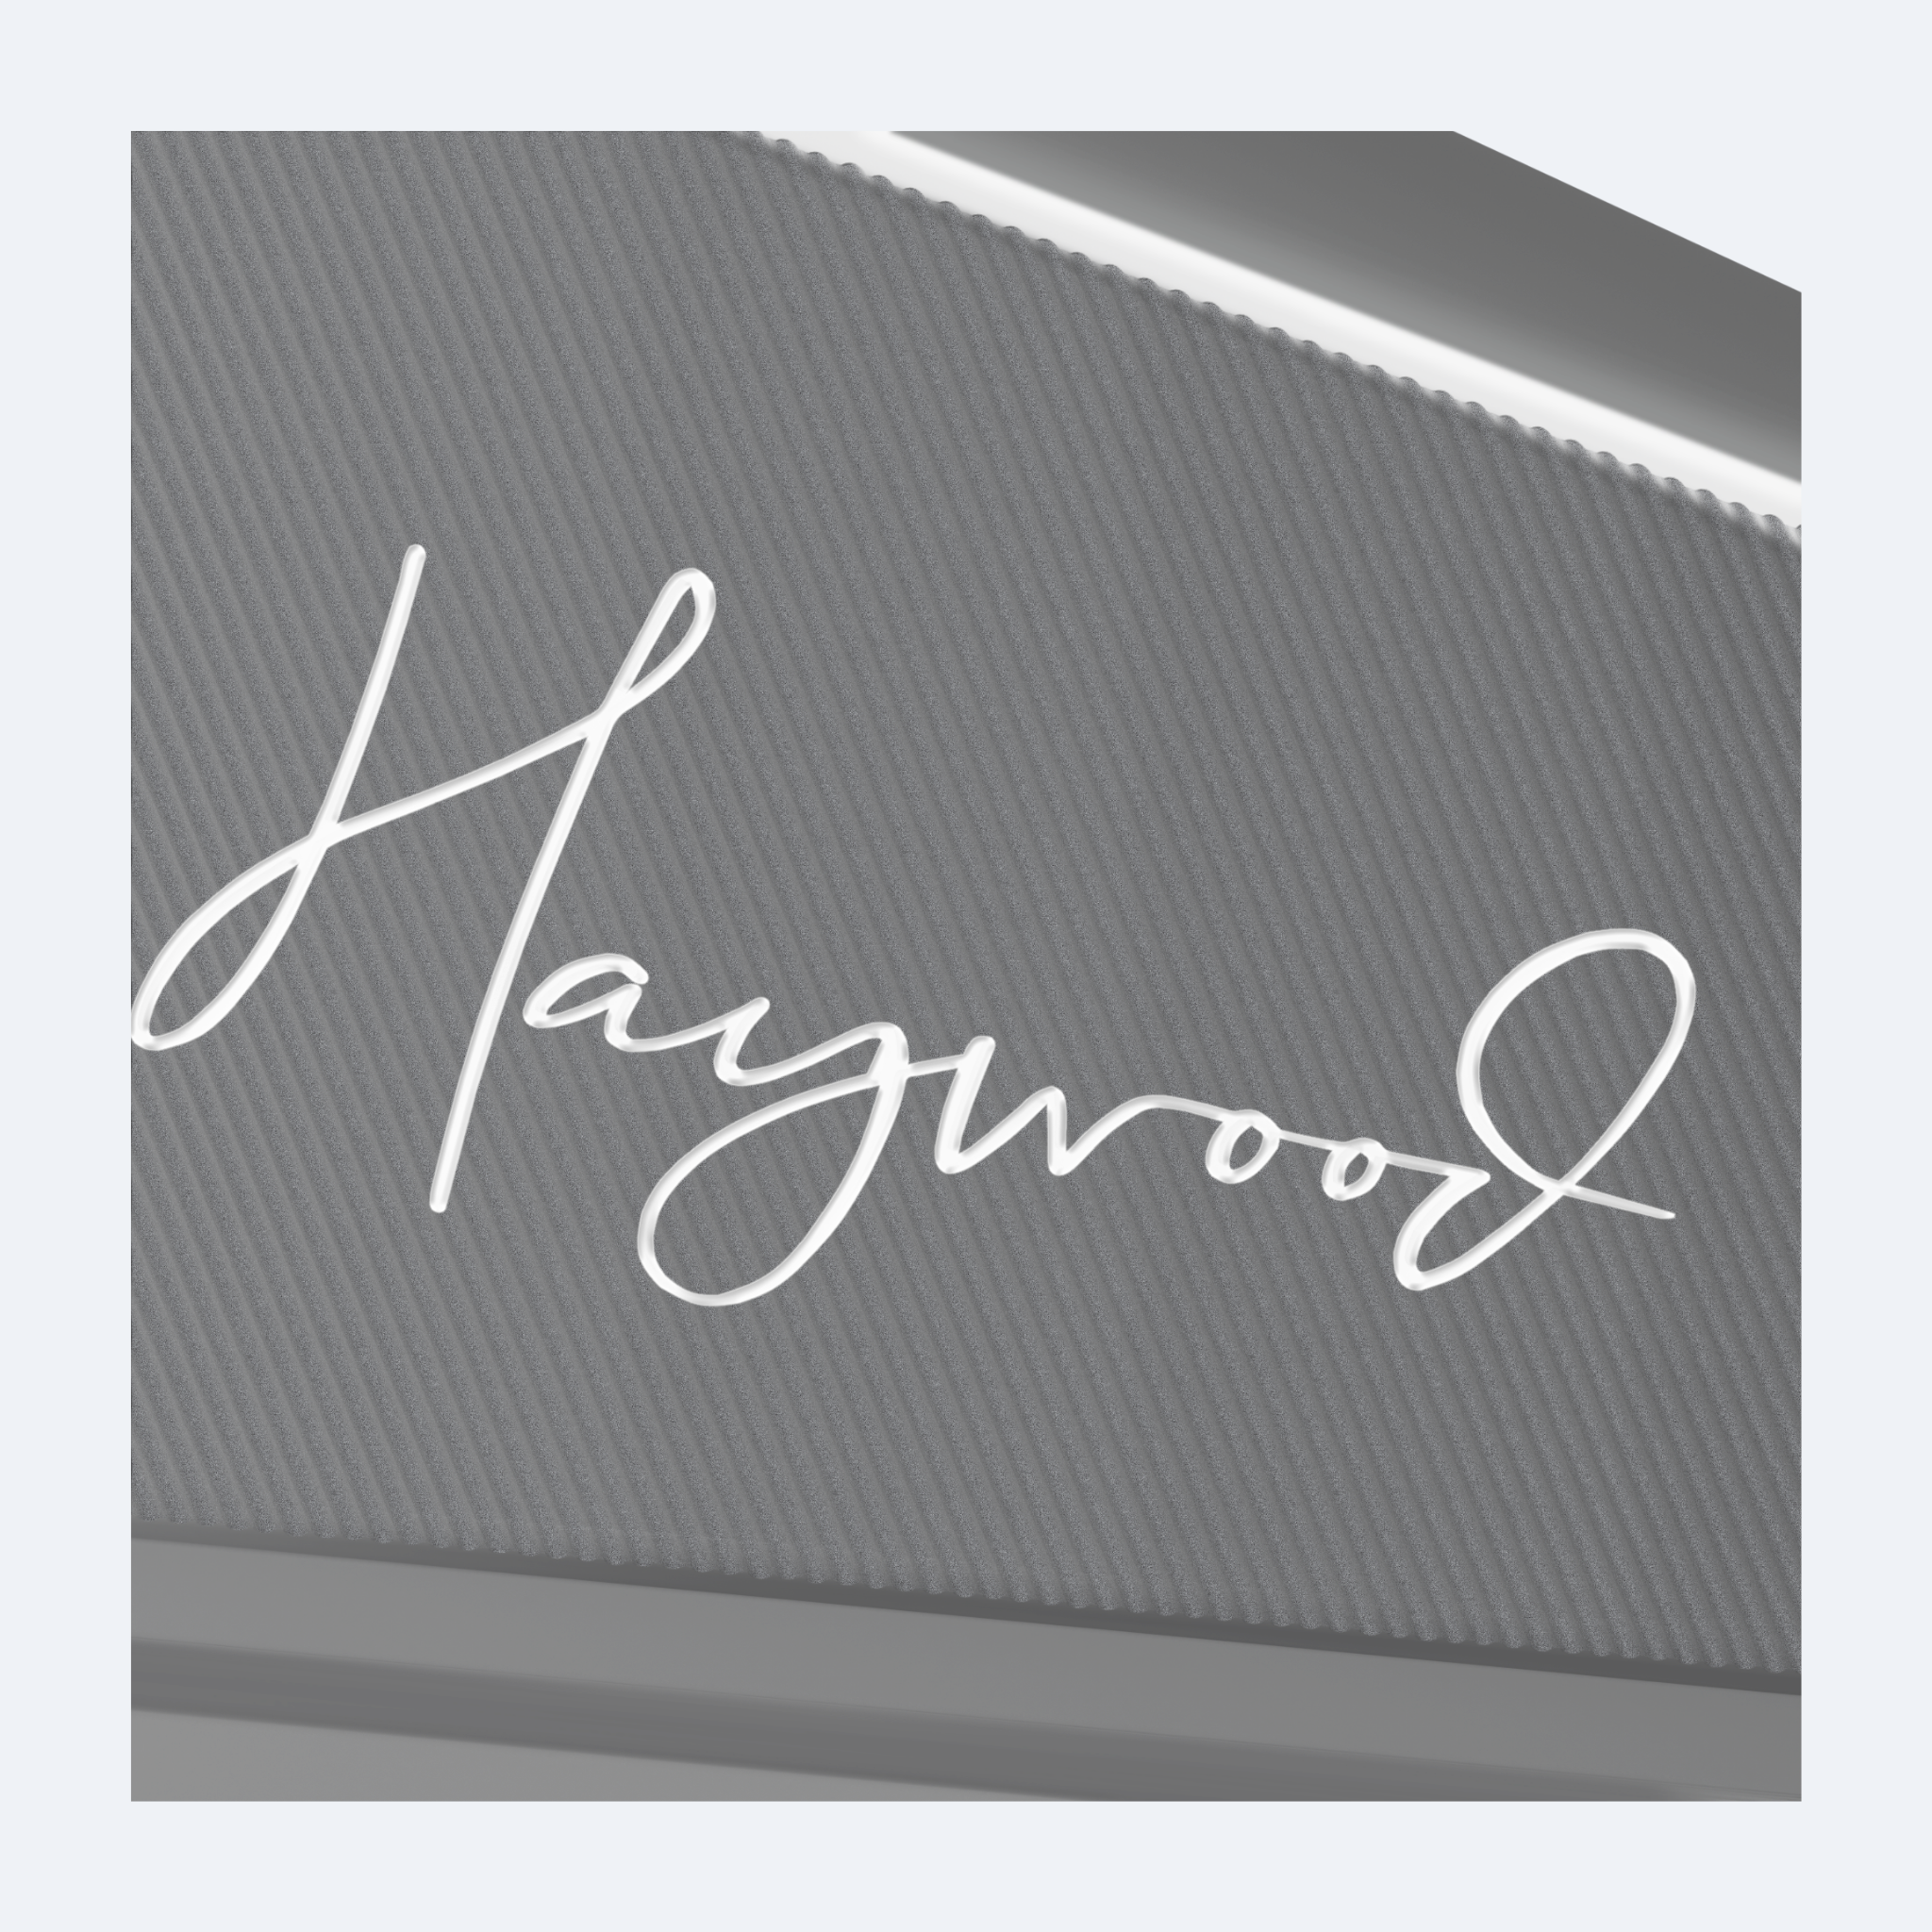 Haywood MB's